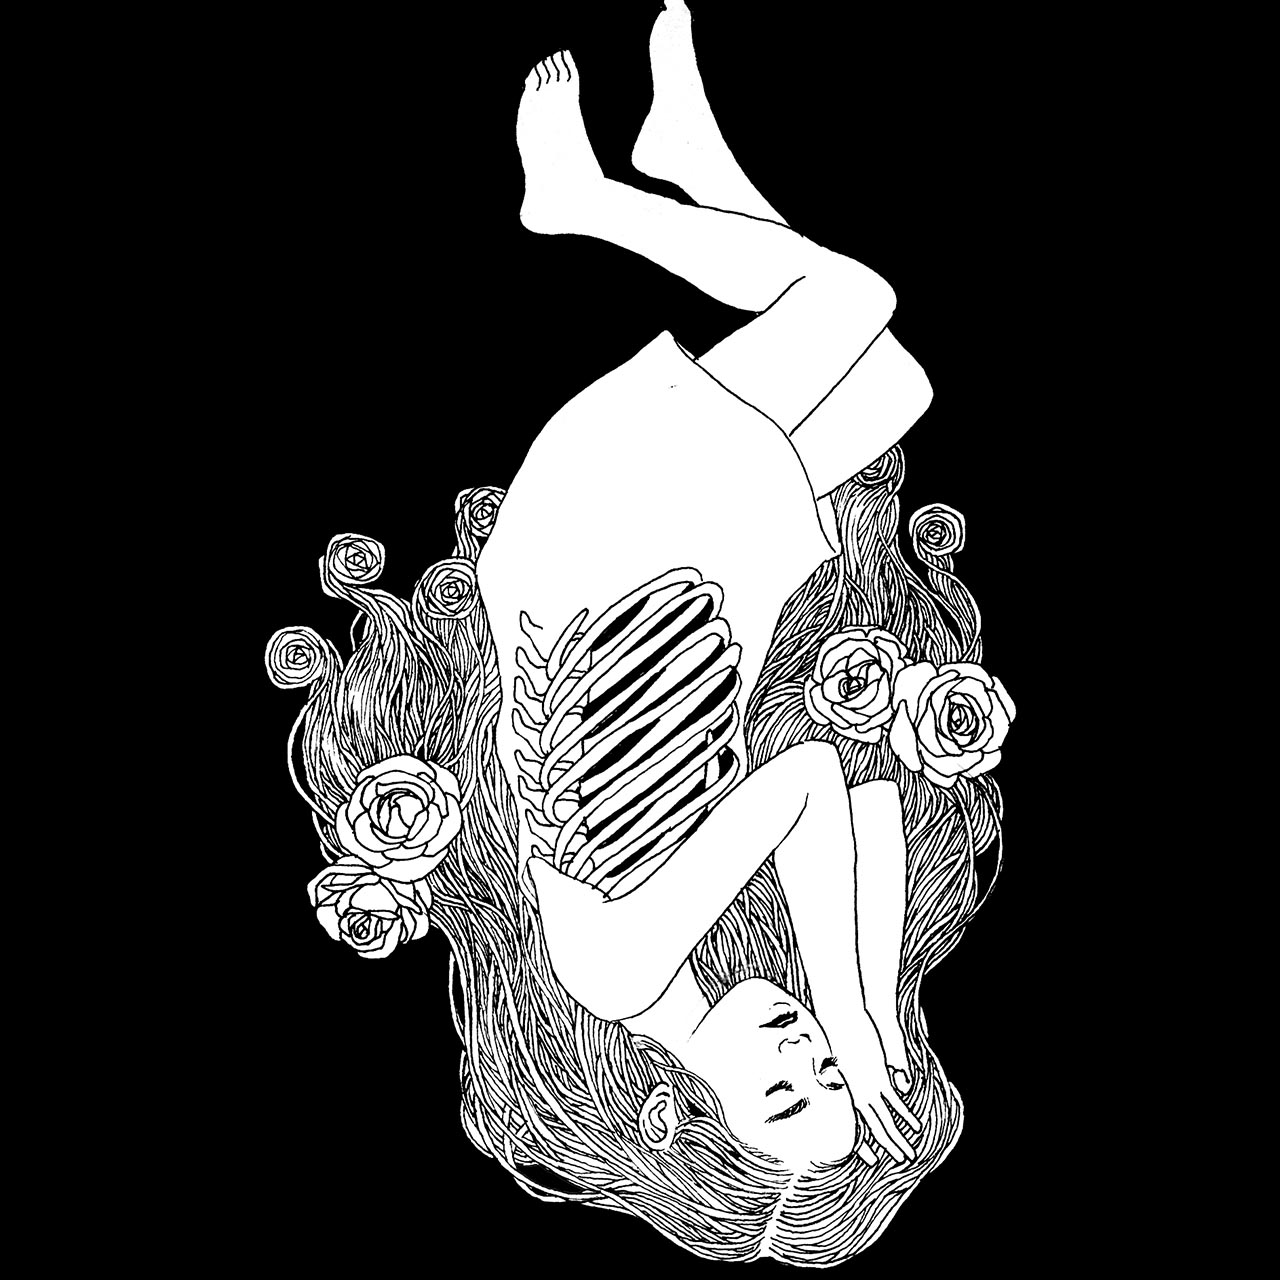 drawing of sleeping girl with flowers in hair and ribs showing illustration av sovande flicka med blommor i håret och revben synliga